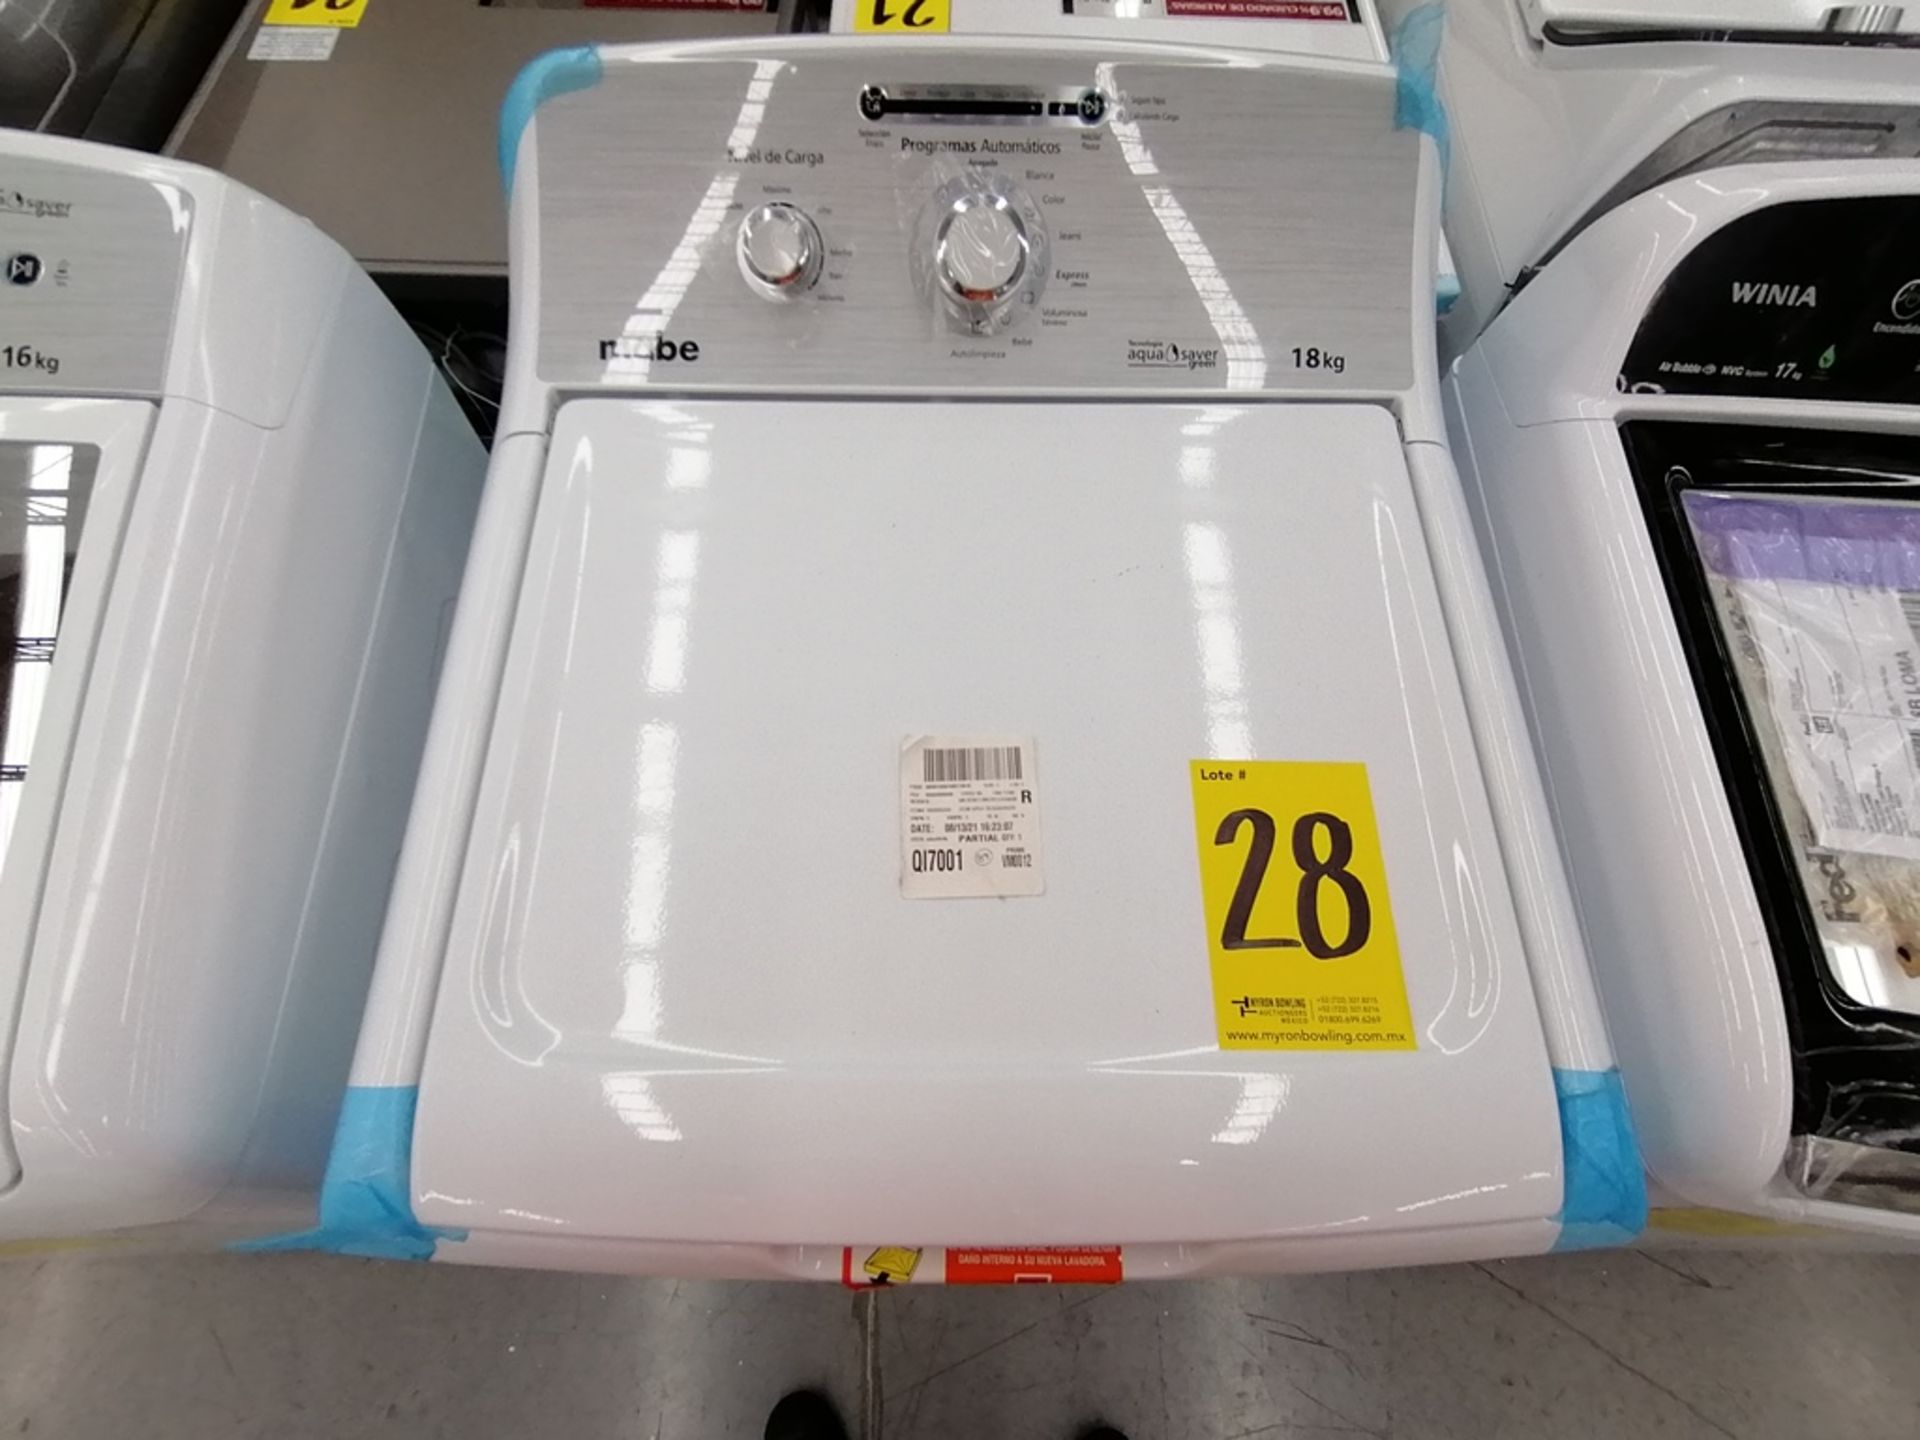 Lote de 3 lavadoras contiene: 1 Lavadora de 16KG, Marca Mabe, Modelo LMA46102VBAB02, Serie 2108S802 - Image 22 of 29